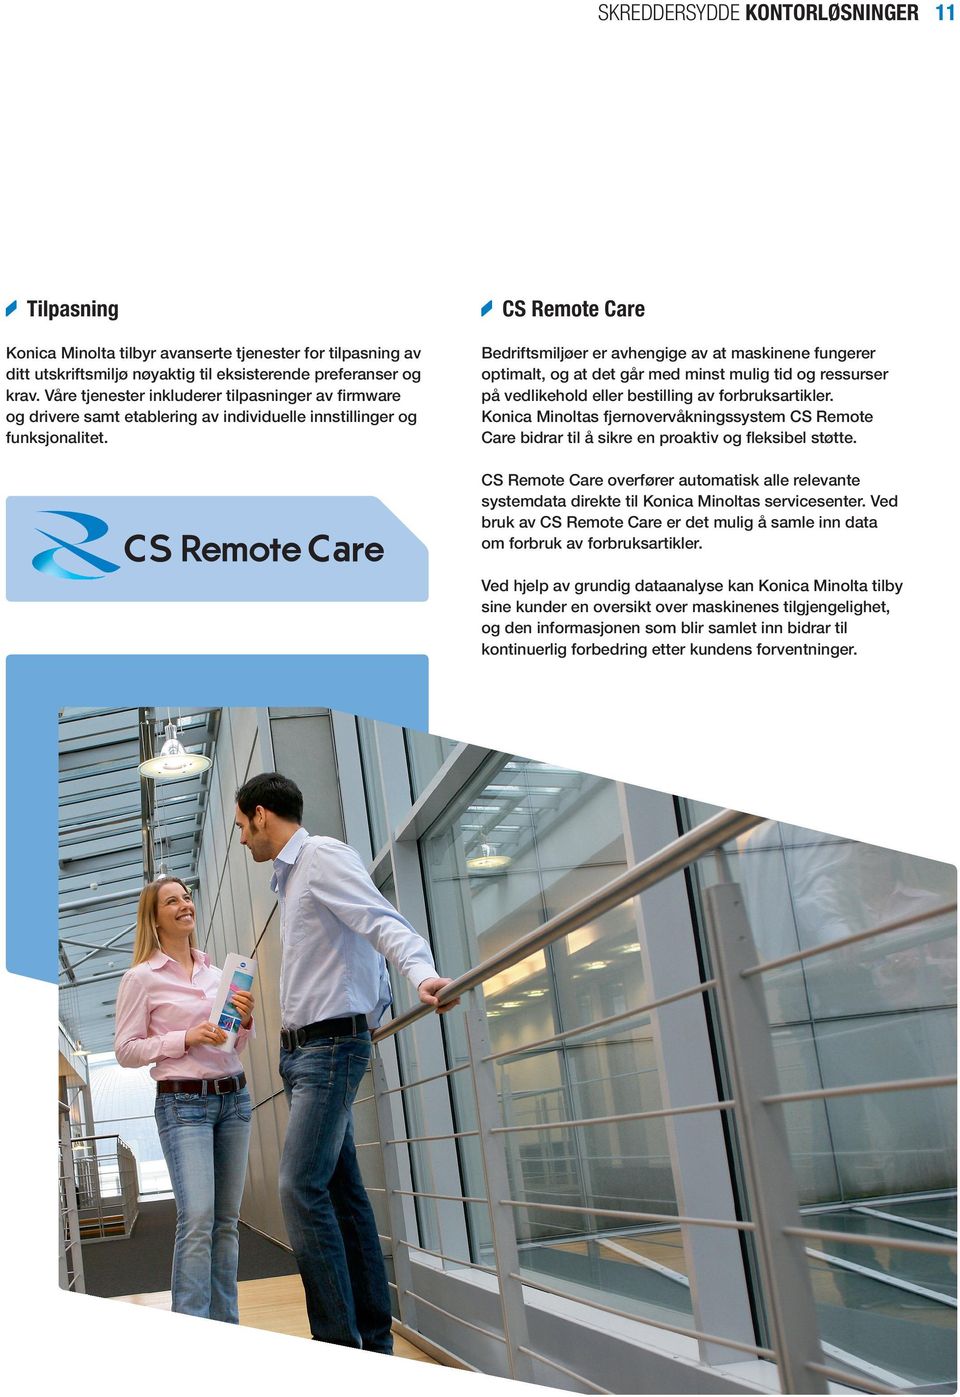 CS Remote Care Bedriftsmiljøer er avhengige av at maskinene fungerer optimalt, og at det går med minst mulig tid og ressurser på vedlikehold eller bestilling av forbruksartikler.